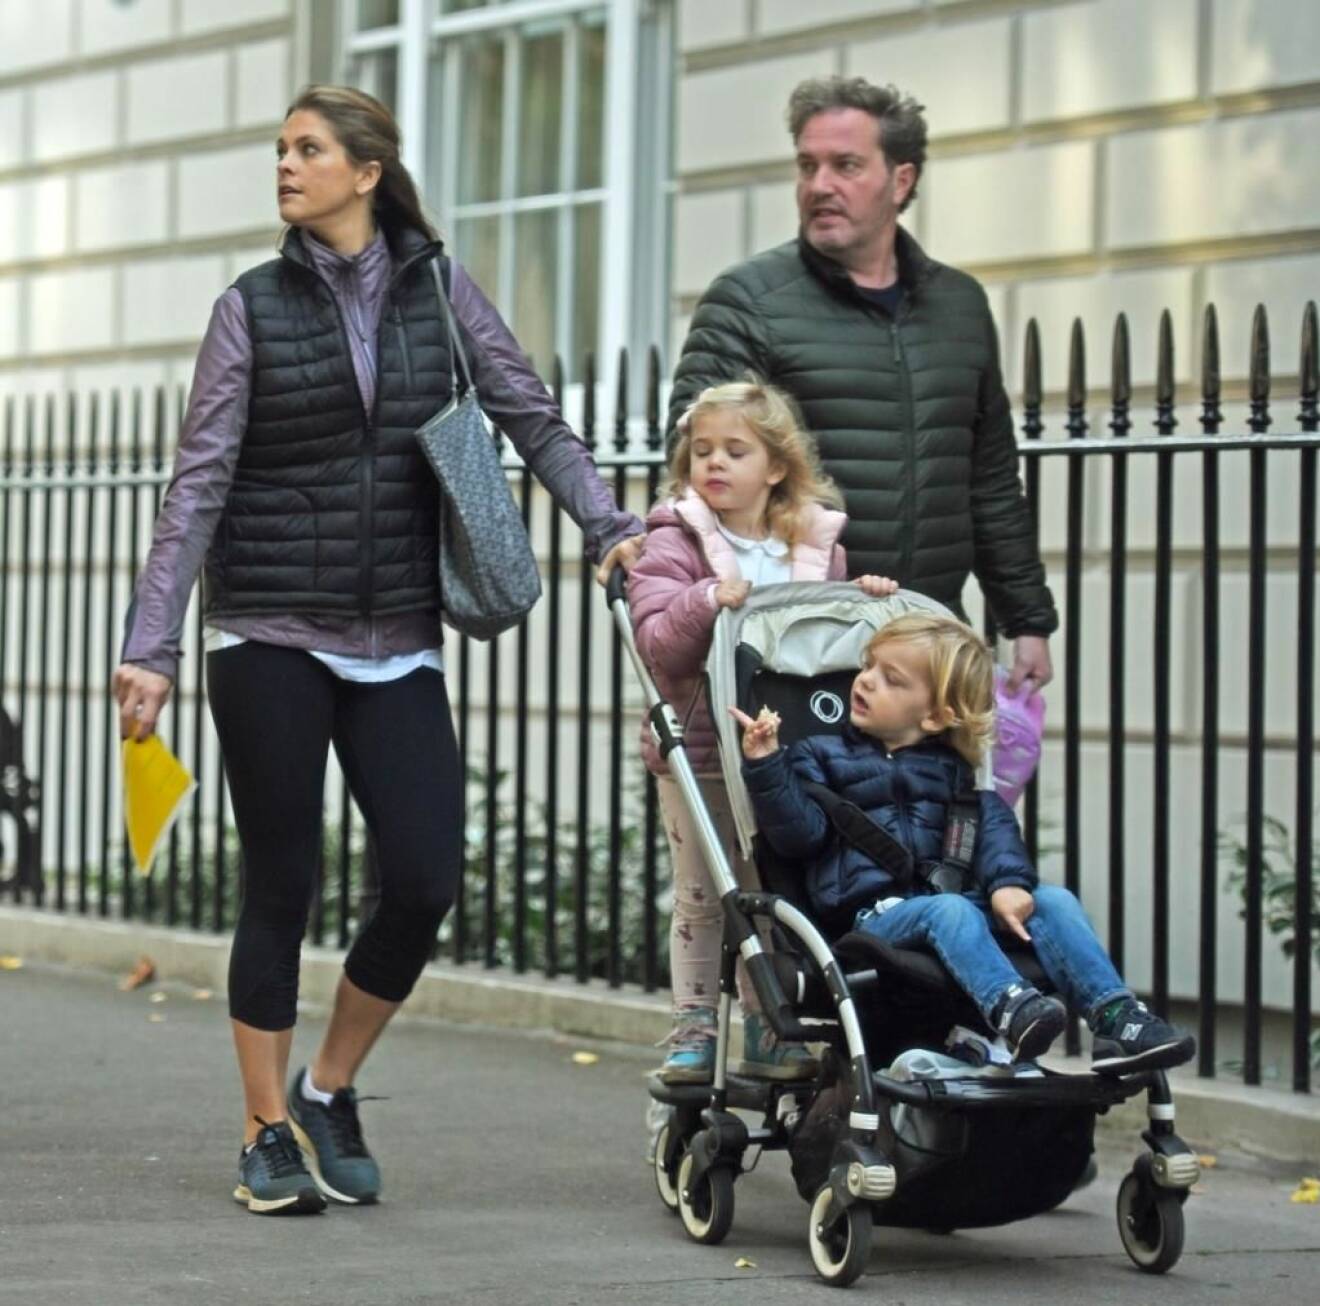 Prinsessan Madeleine och maken Chris på väg att lämna barnen på förskola i London.